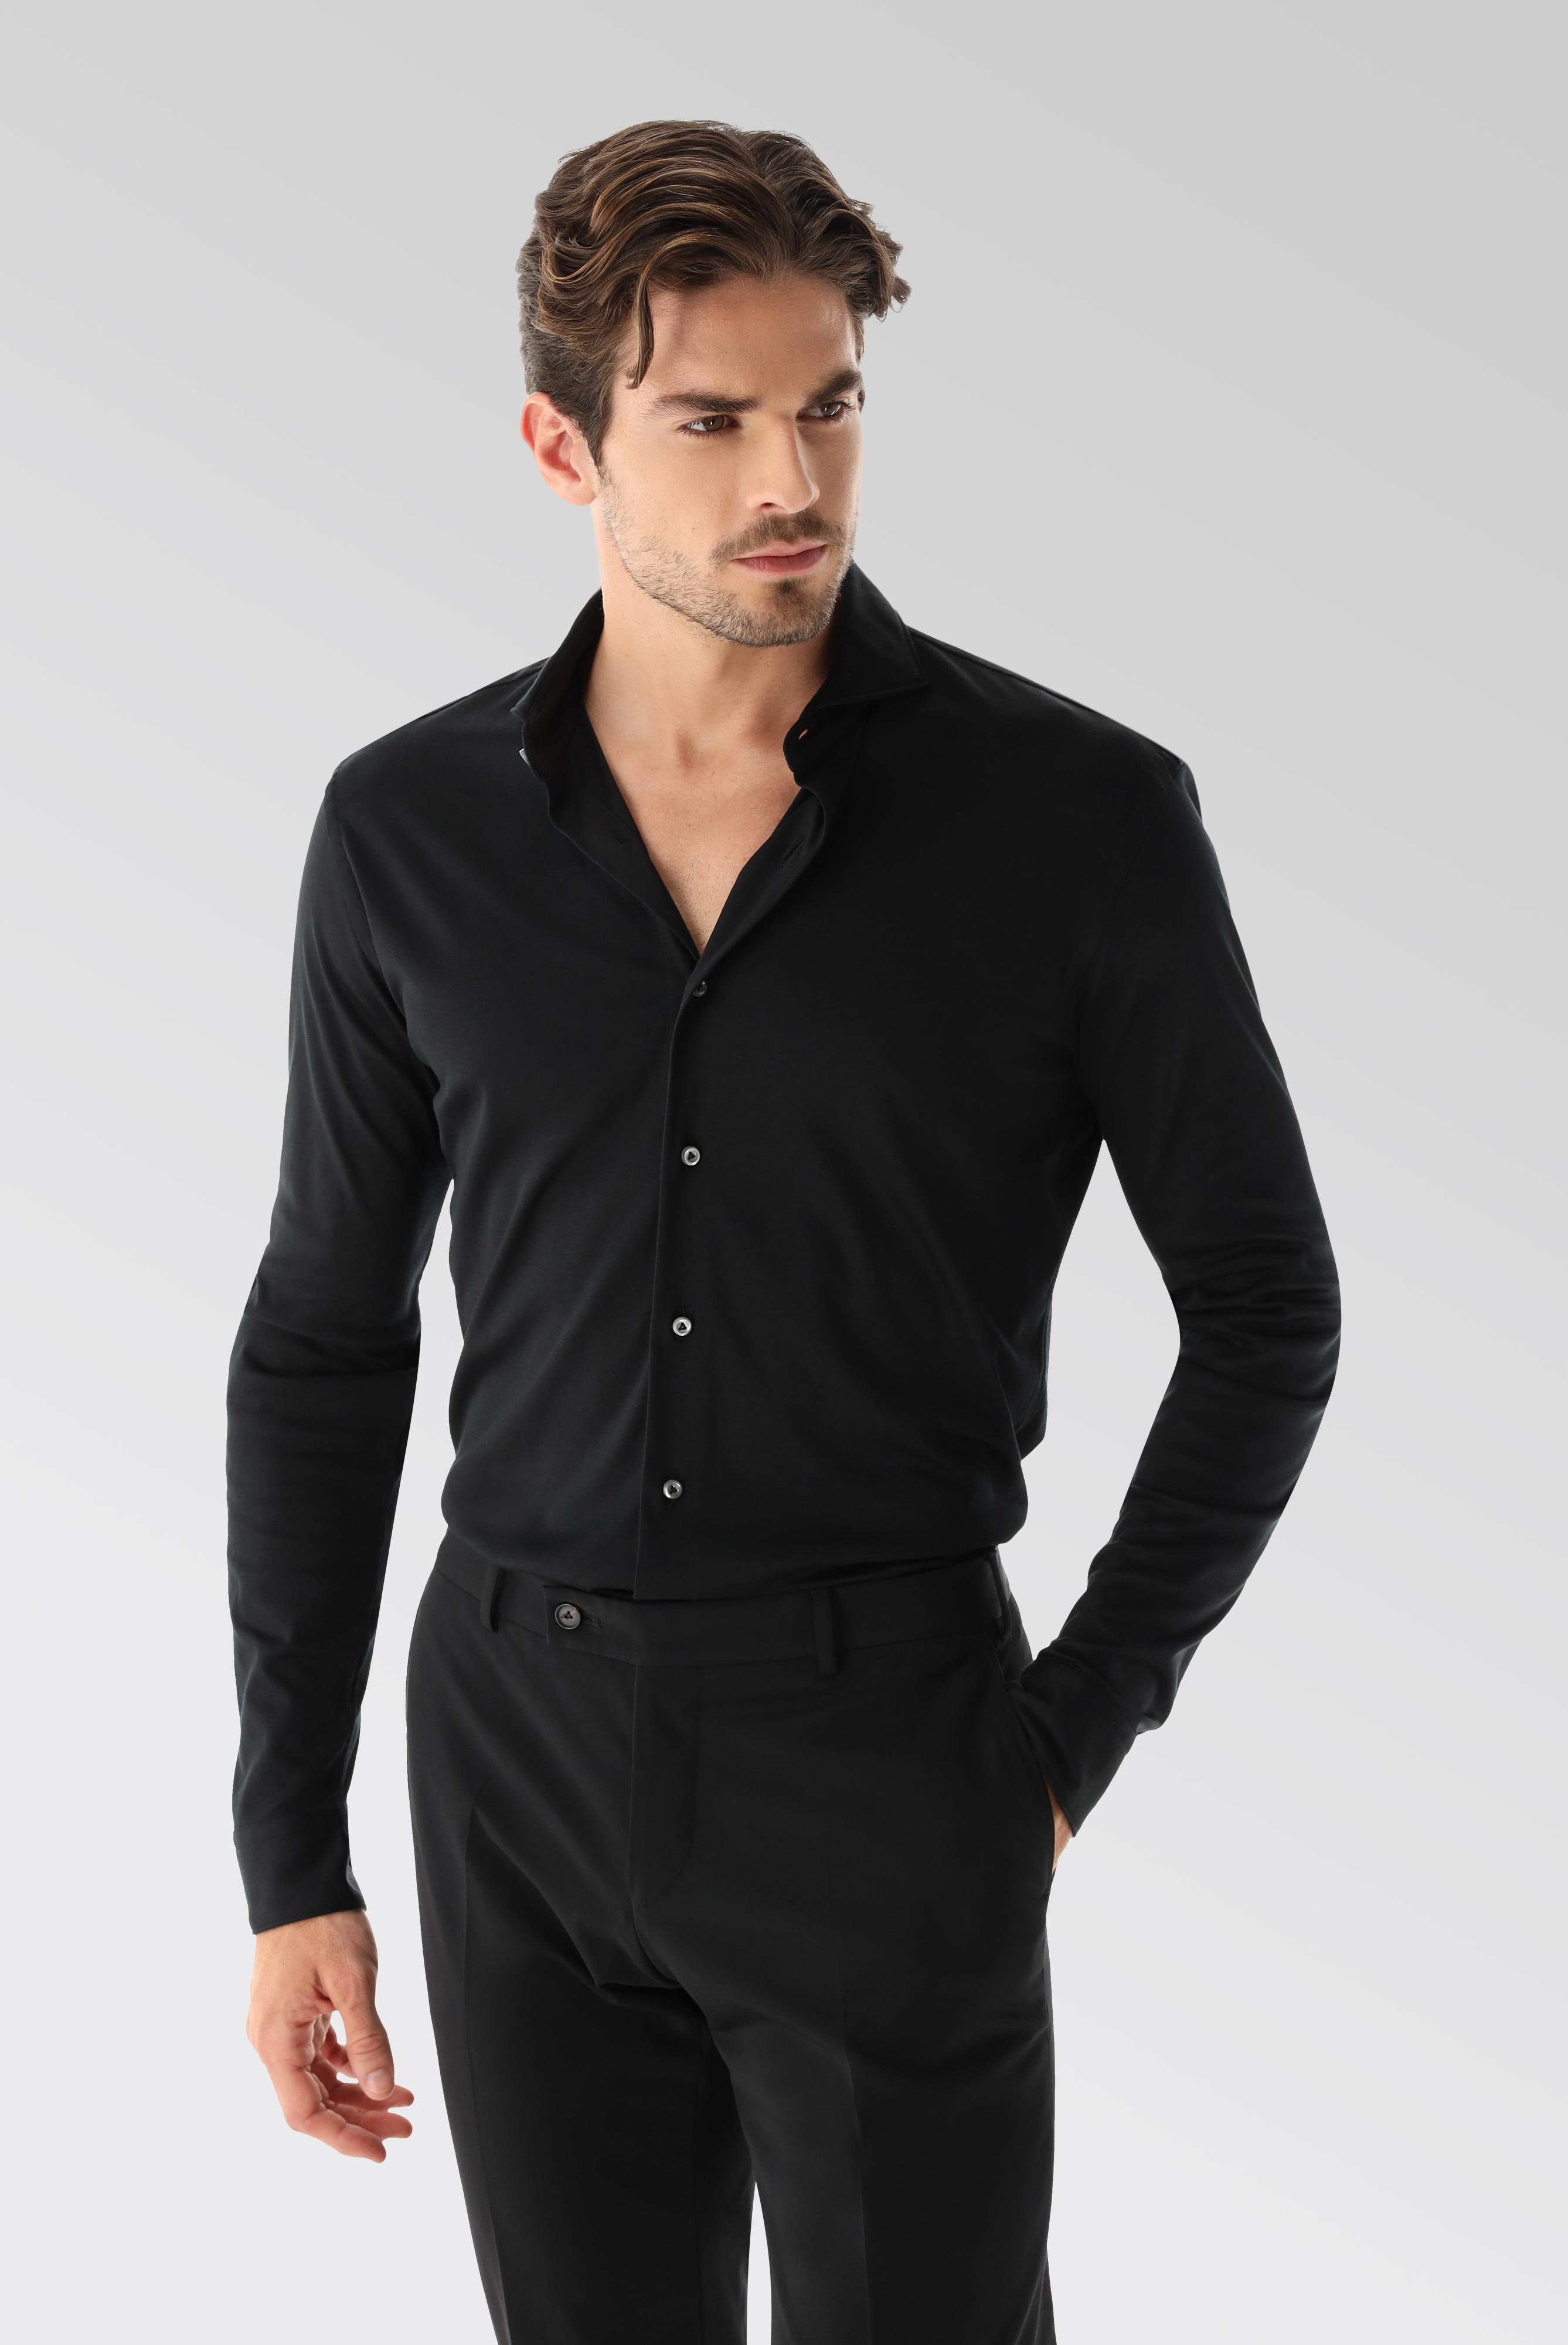 Bügelleichte Hemden+Jersey Hemd mit glänzender Optik Tailor Fit+20.1683.UC.180031.099.XL